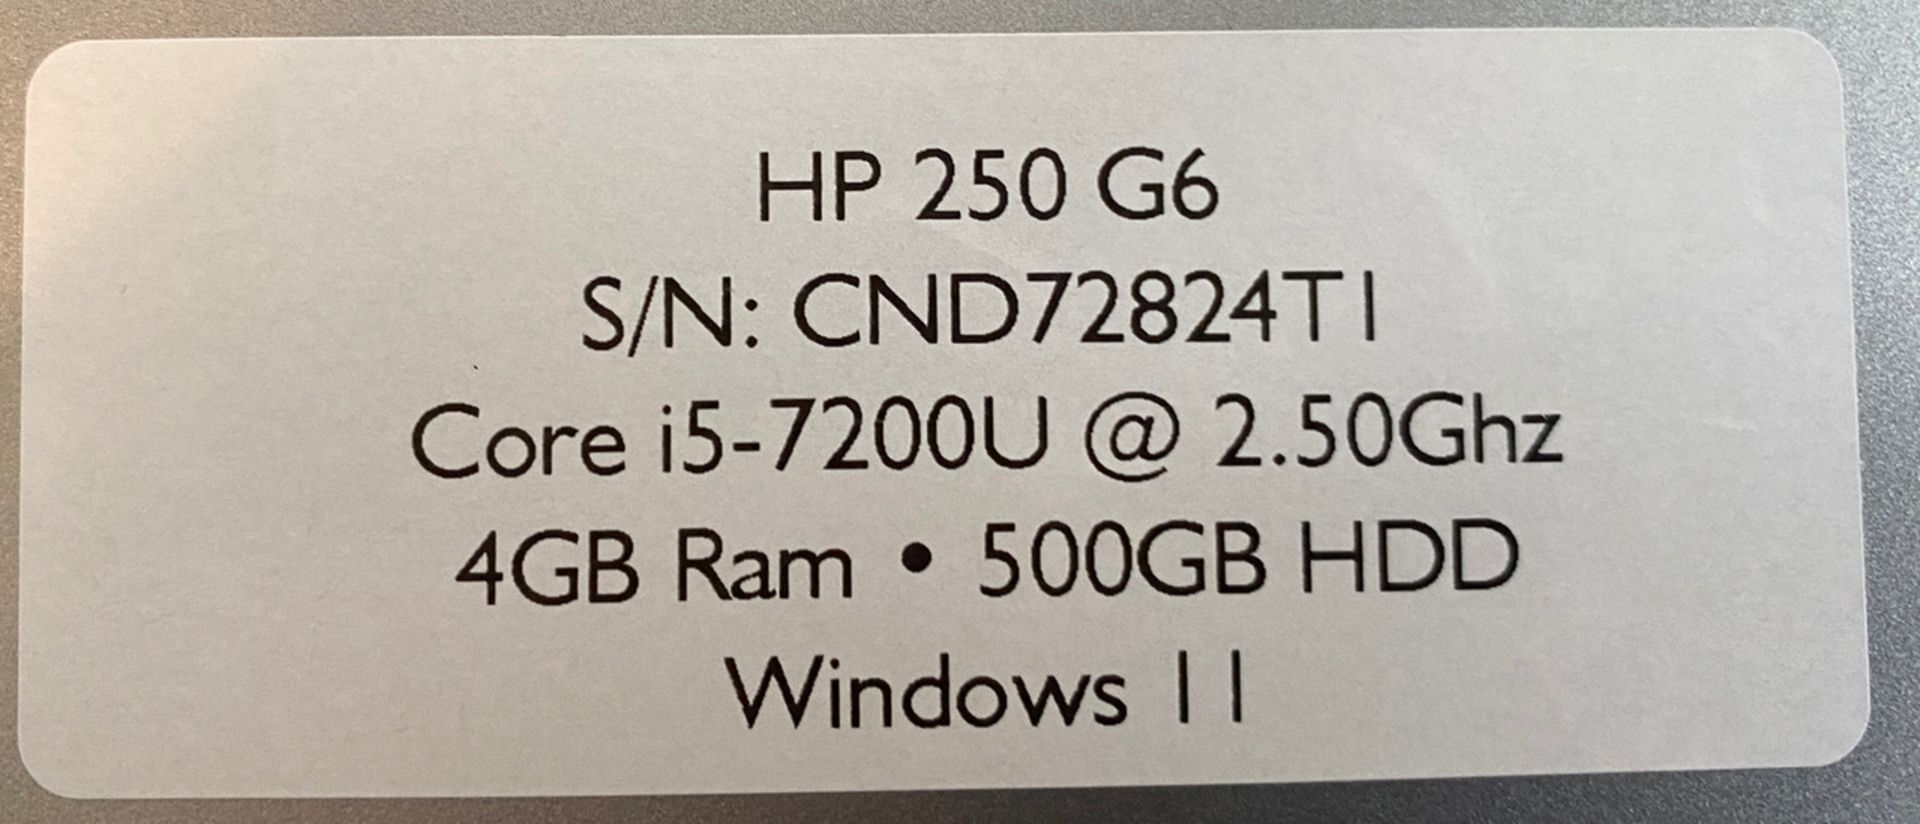 1 x HP 250 G6 Core i5-7200U @ 2.50Ghz 8GB Ram  500GB HDD - Image 3 of 3